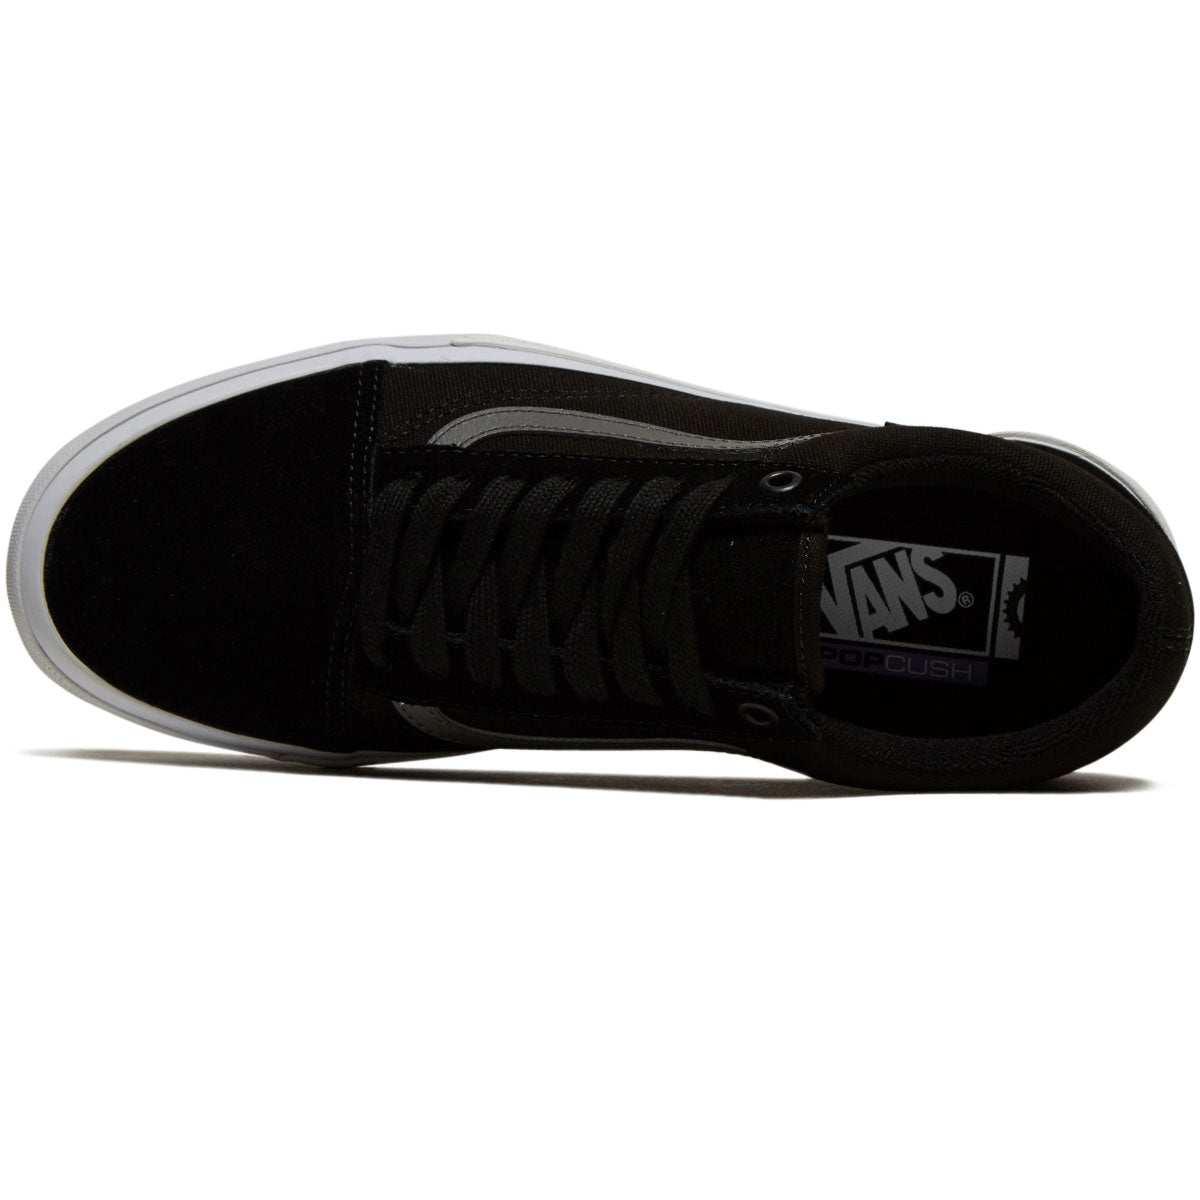 Vans Bmx Old Skool Shoes - Black/White/Grey image 3